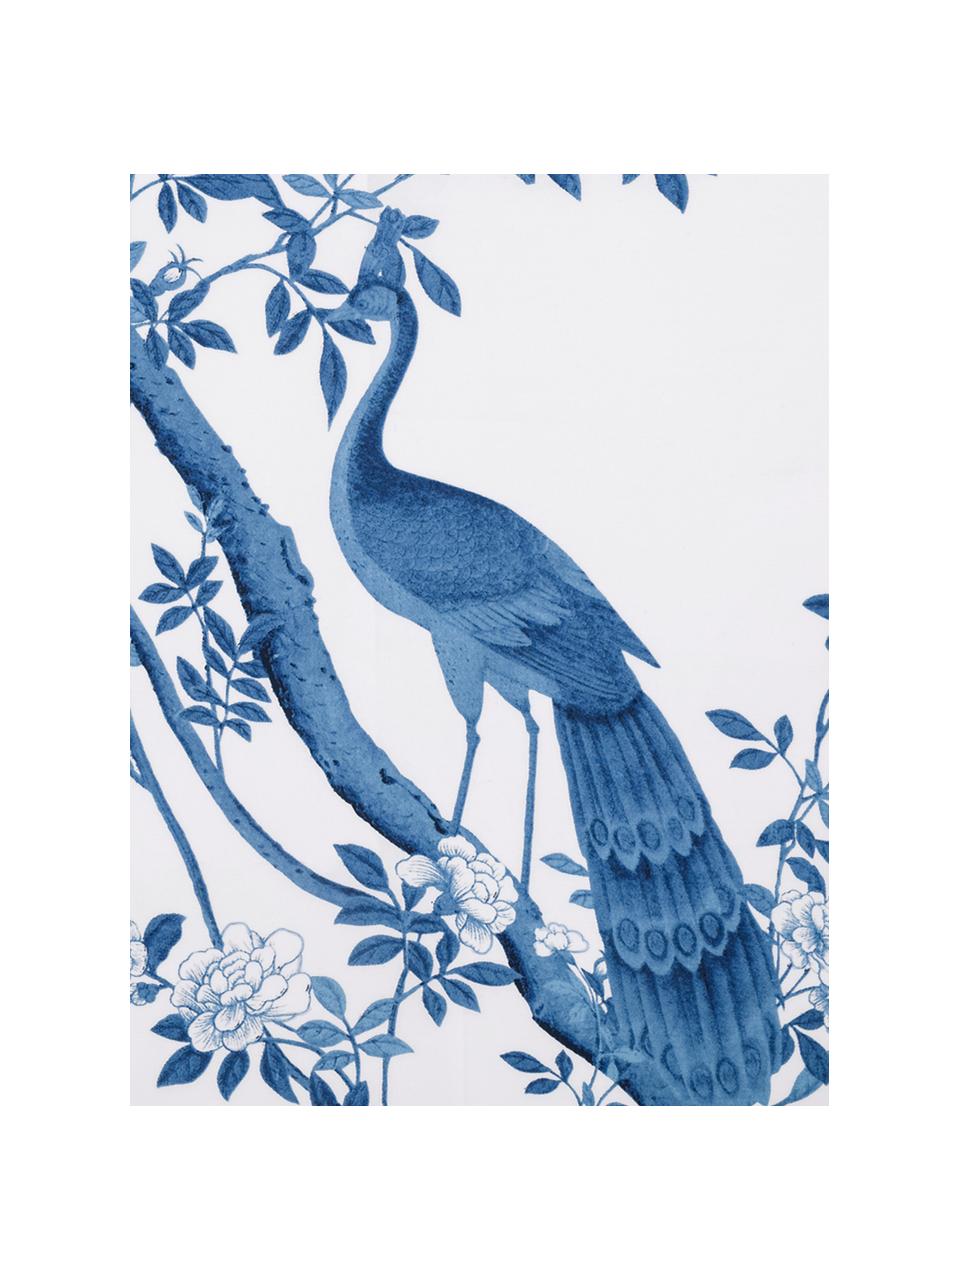 Baumwollperkal-Bettwäsche Annabelle mit floraler Zeichnung, Webart: Perkal Fadendichte 200 TC, Blau, Weiß, 135 x 200 cm + 1 Kissen 80 x 80 cm